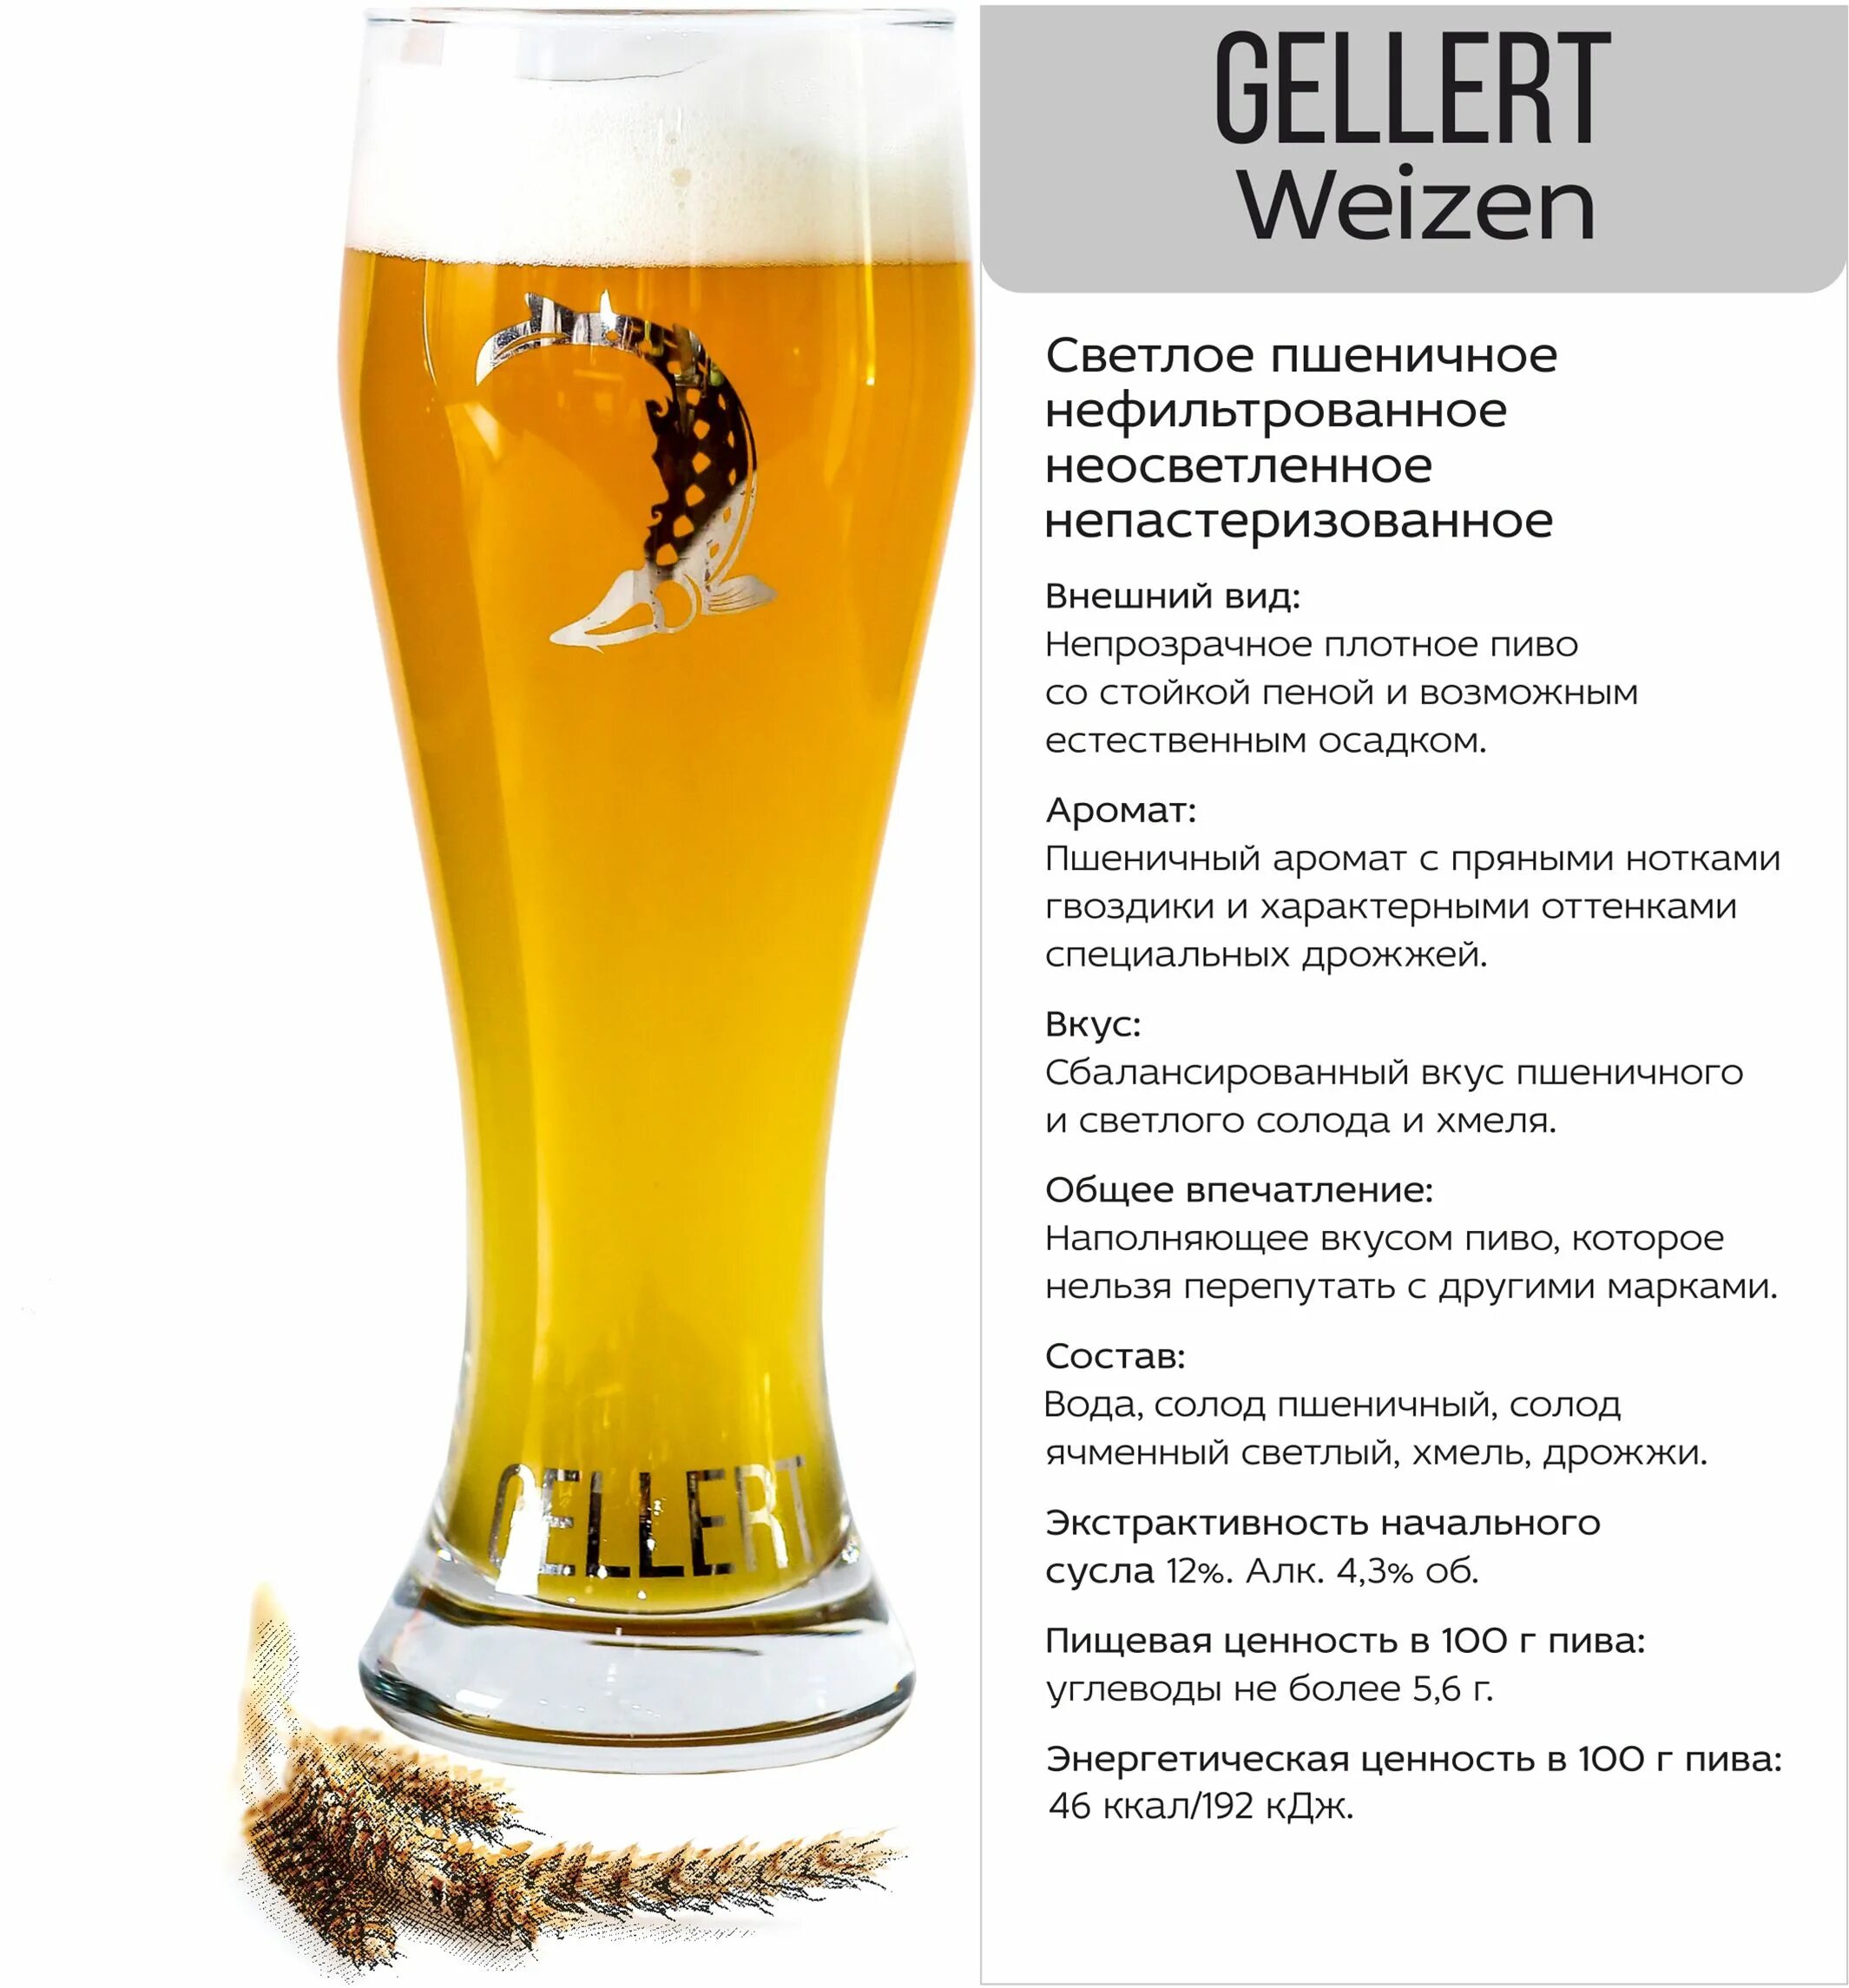 Сколько калорий в безалкогольном. Gellert Lager пиво. Лагер пшеничное нефильтрованное пиво.